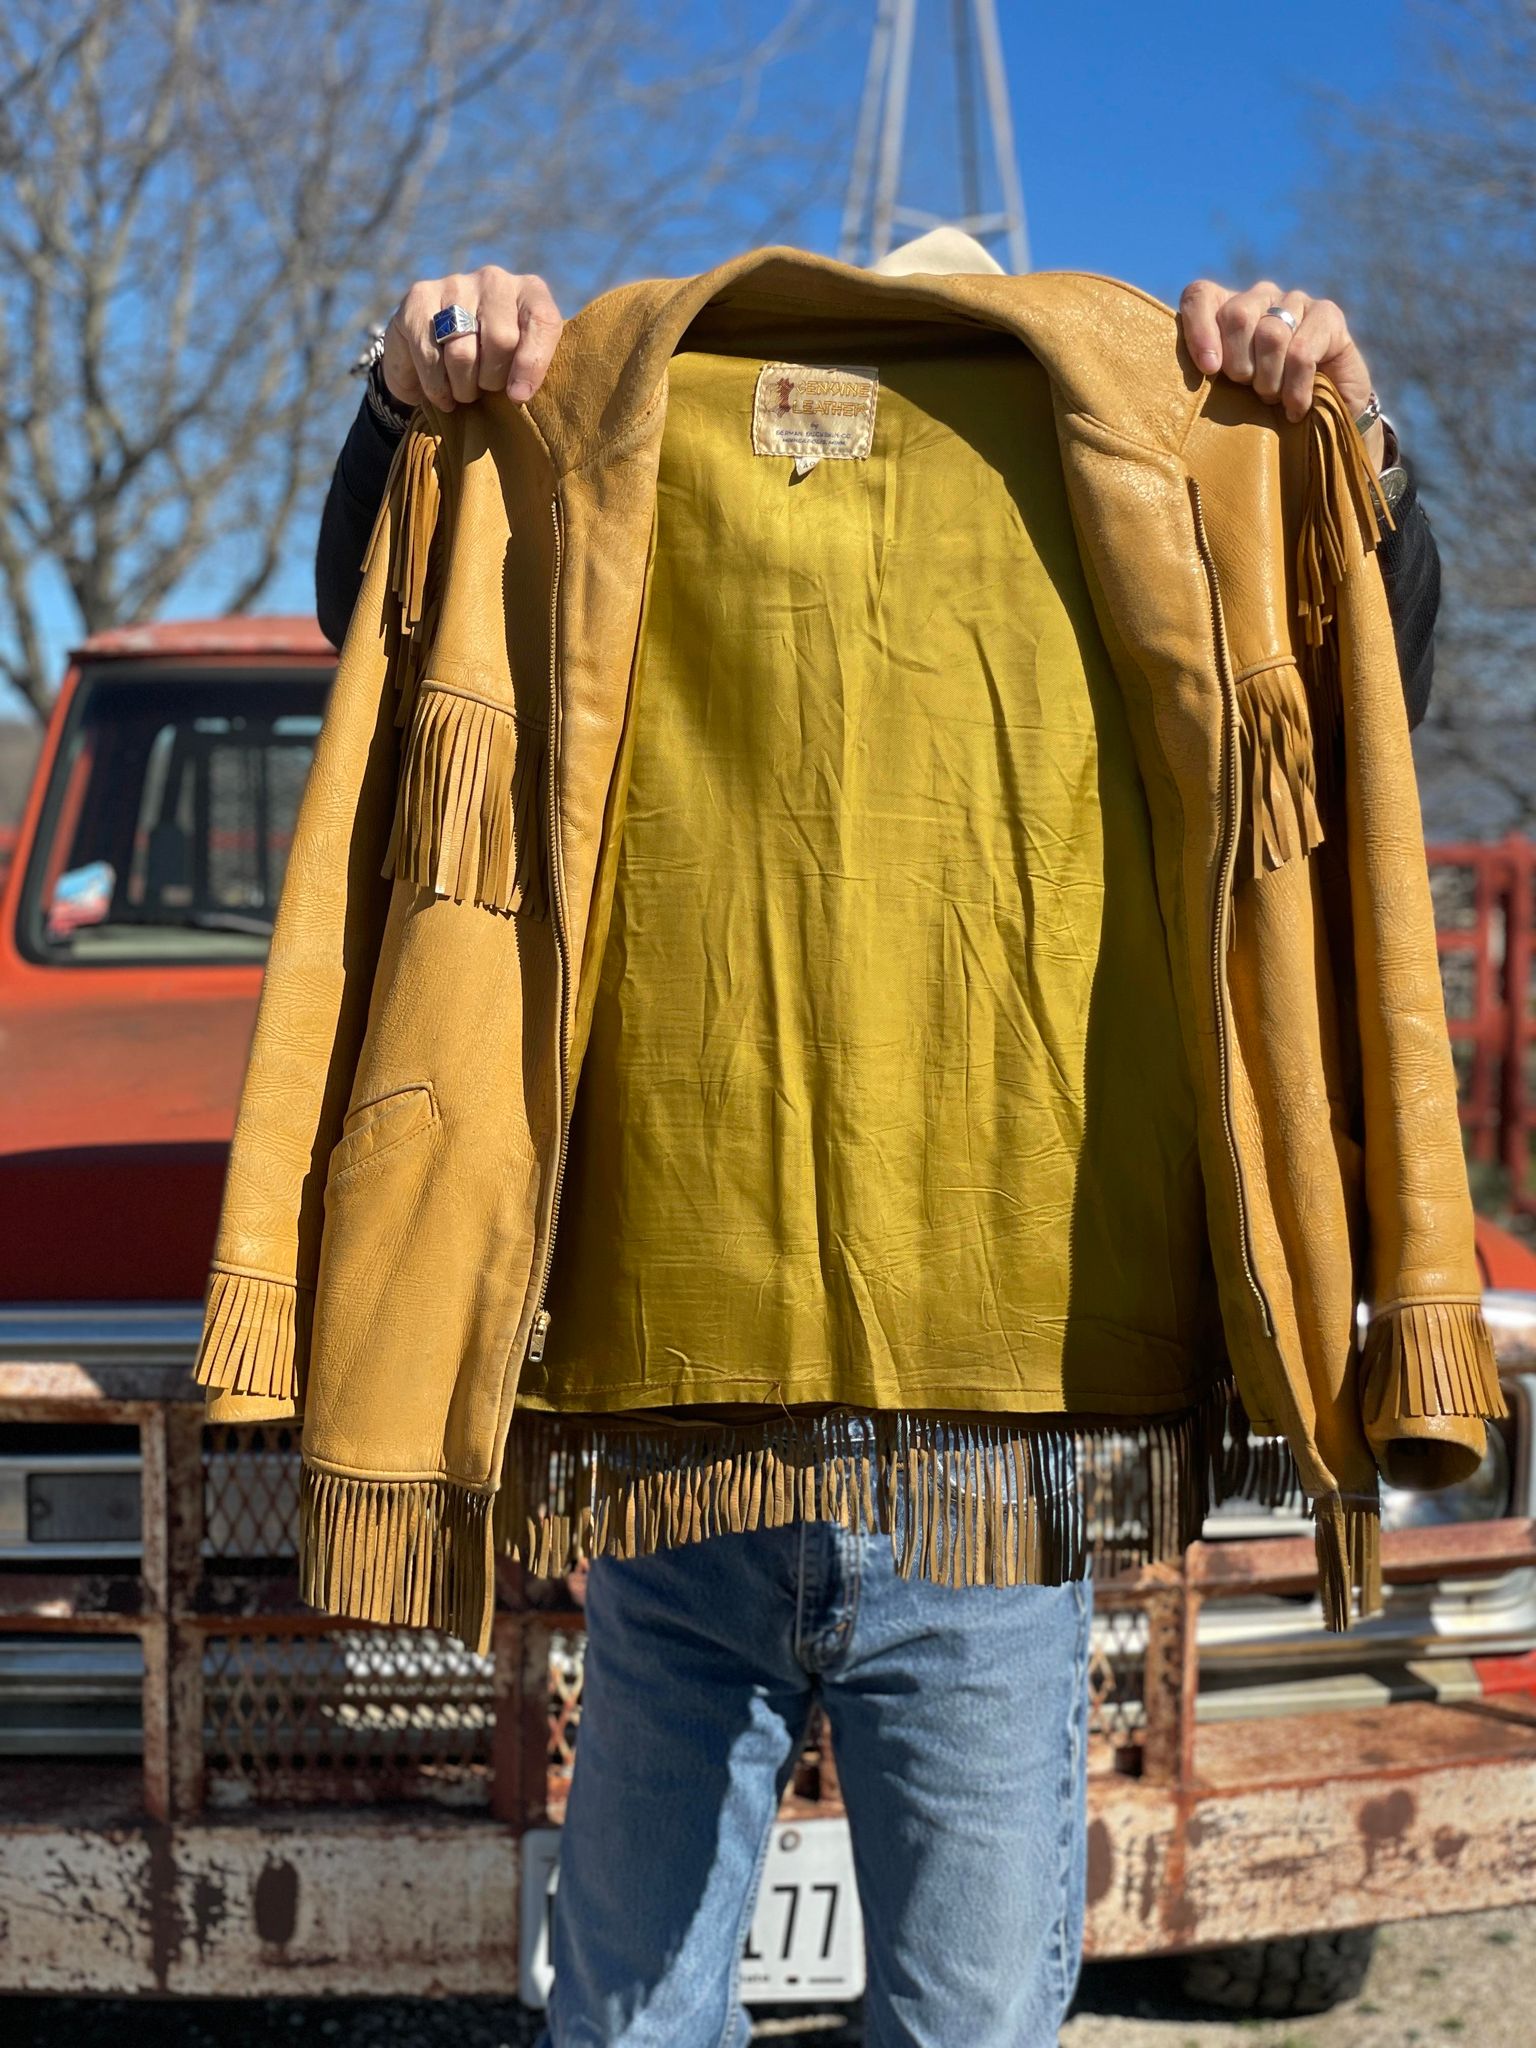 Men's Deerskin Jacket from the Early 60's